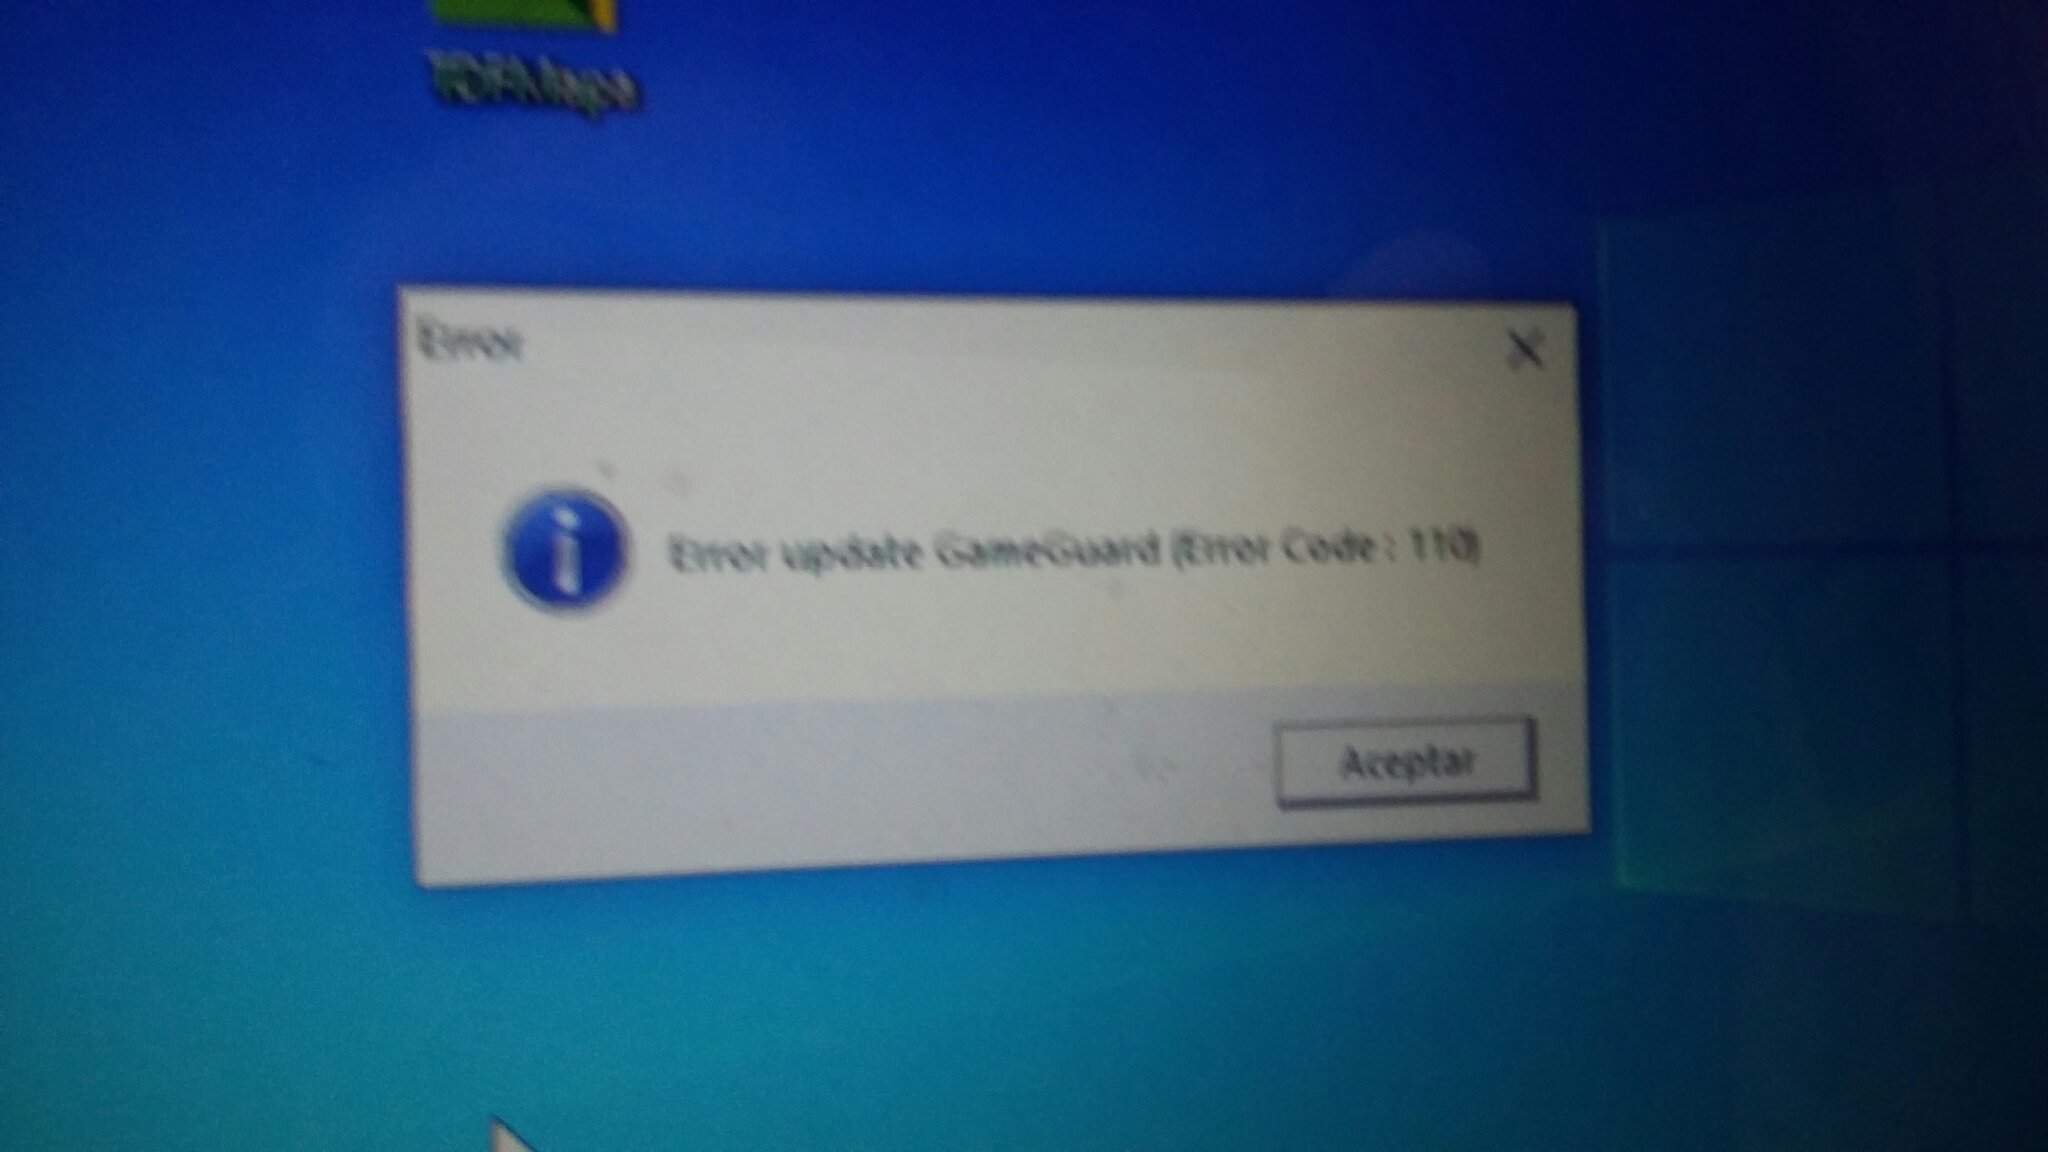 elsword error update gameguard error code 400